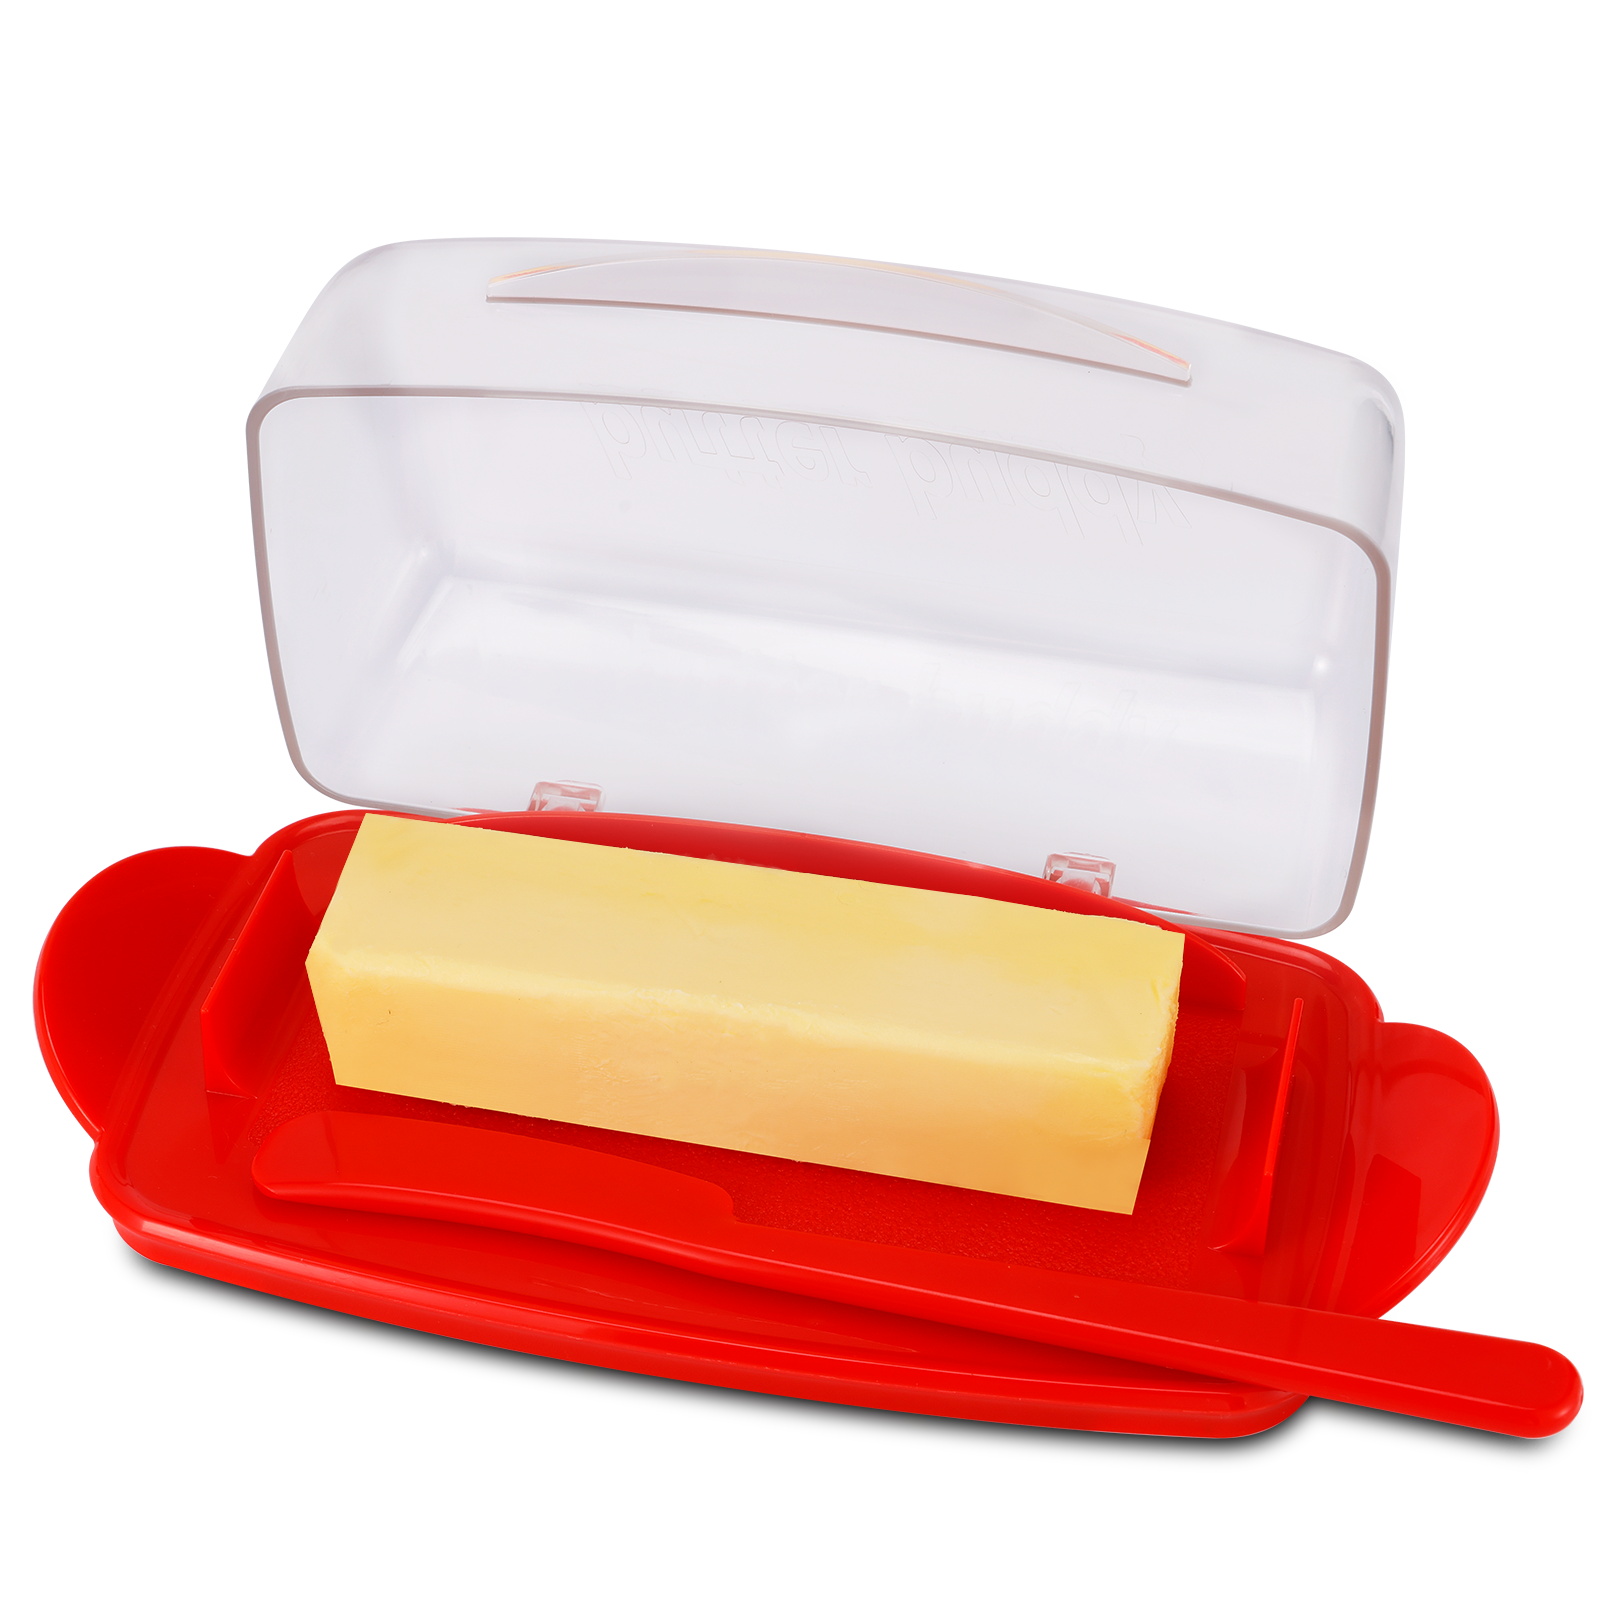 Botervloot met aanrechtdeksel, duurzame plastic botercontainer met spreidmes, schattig handvat en klapdekselontwerp voor gemakkelijke toegang, antislipbodem rood